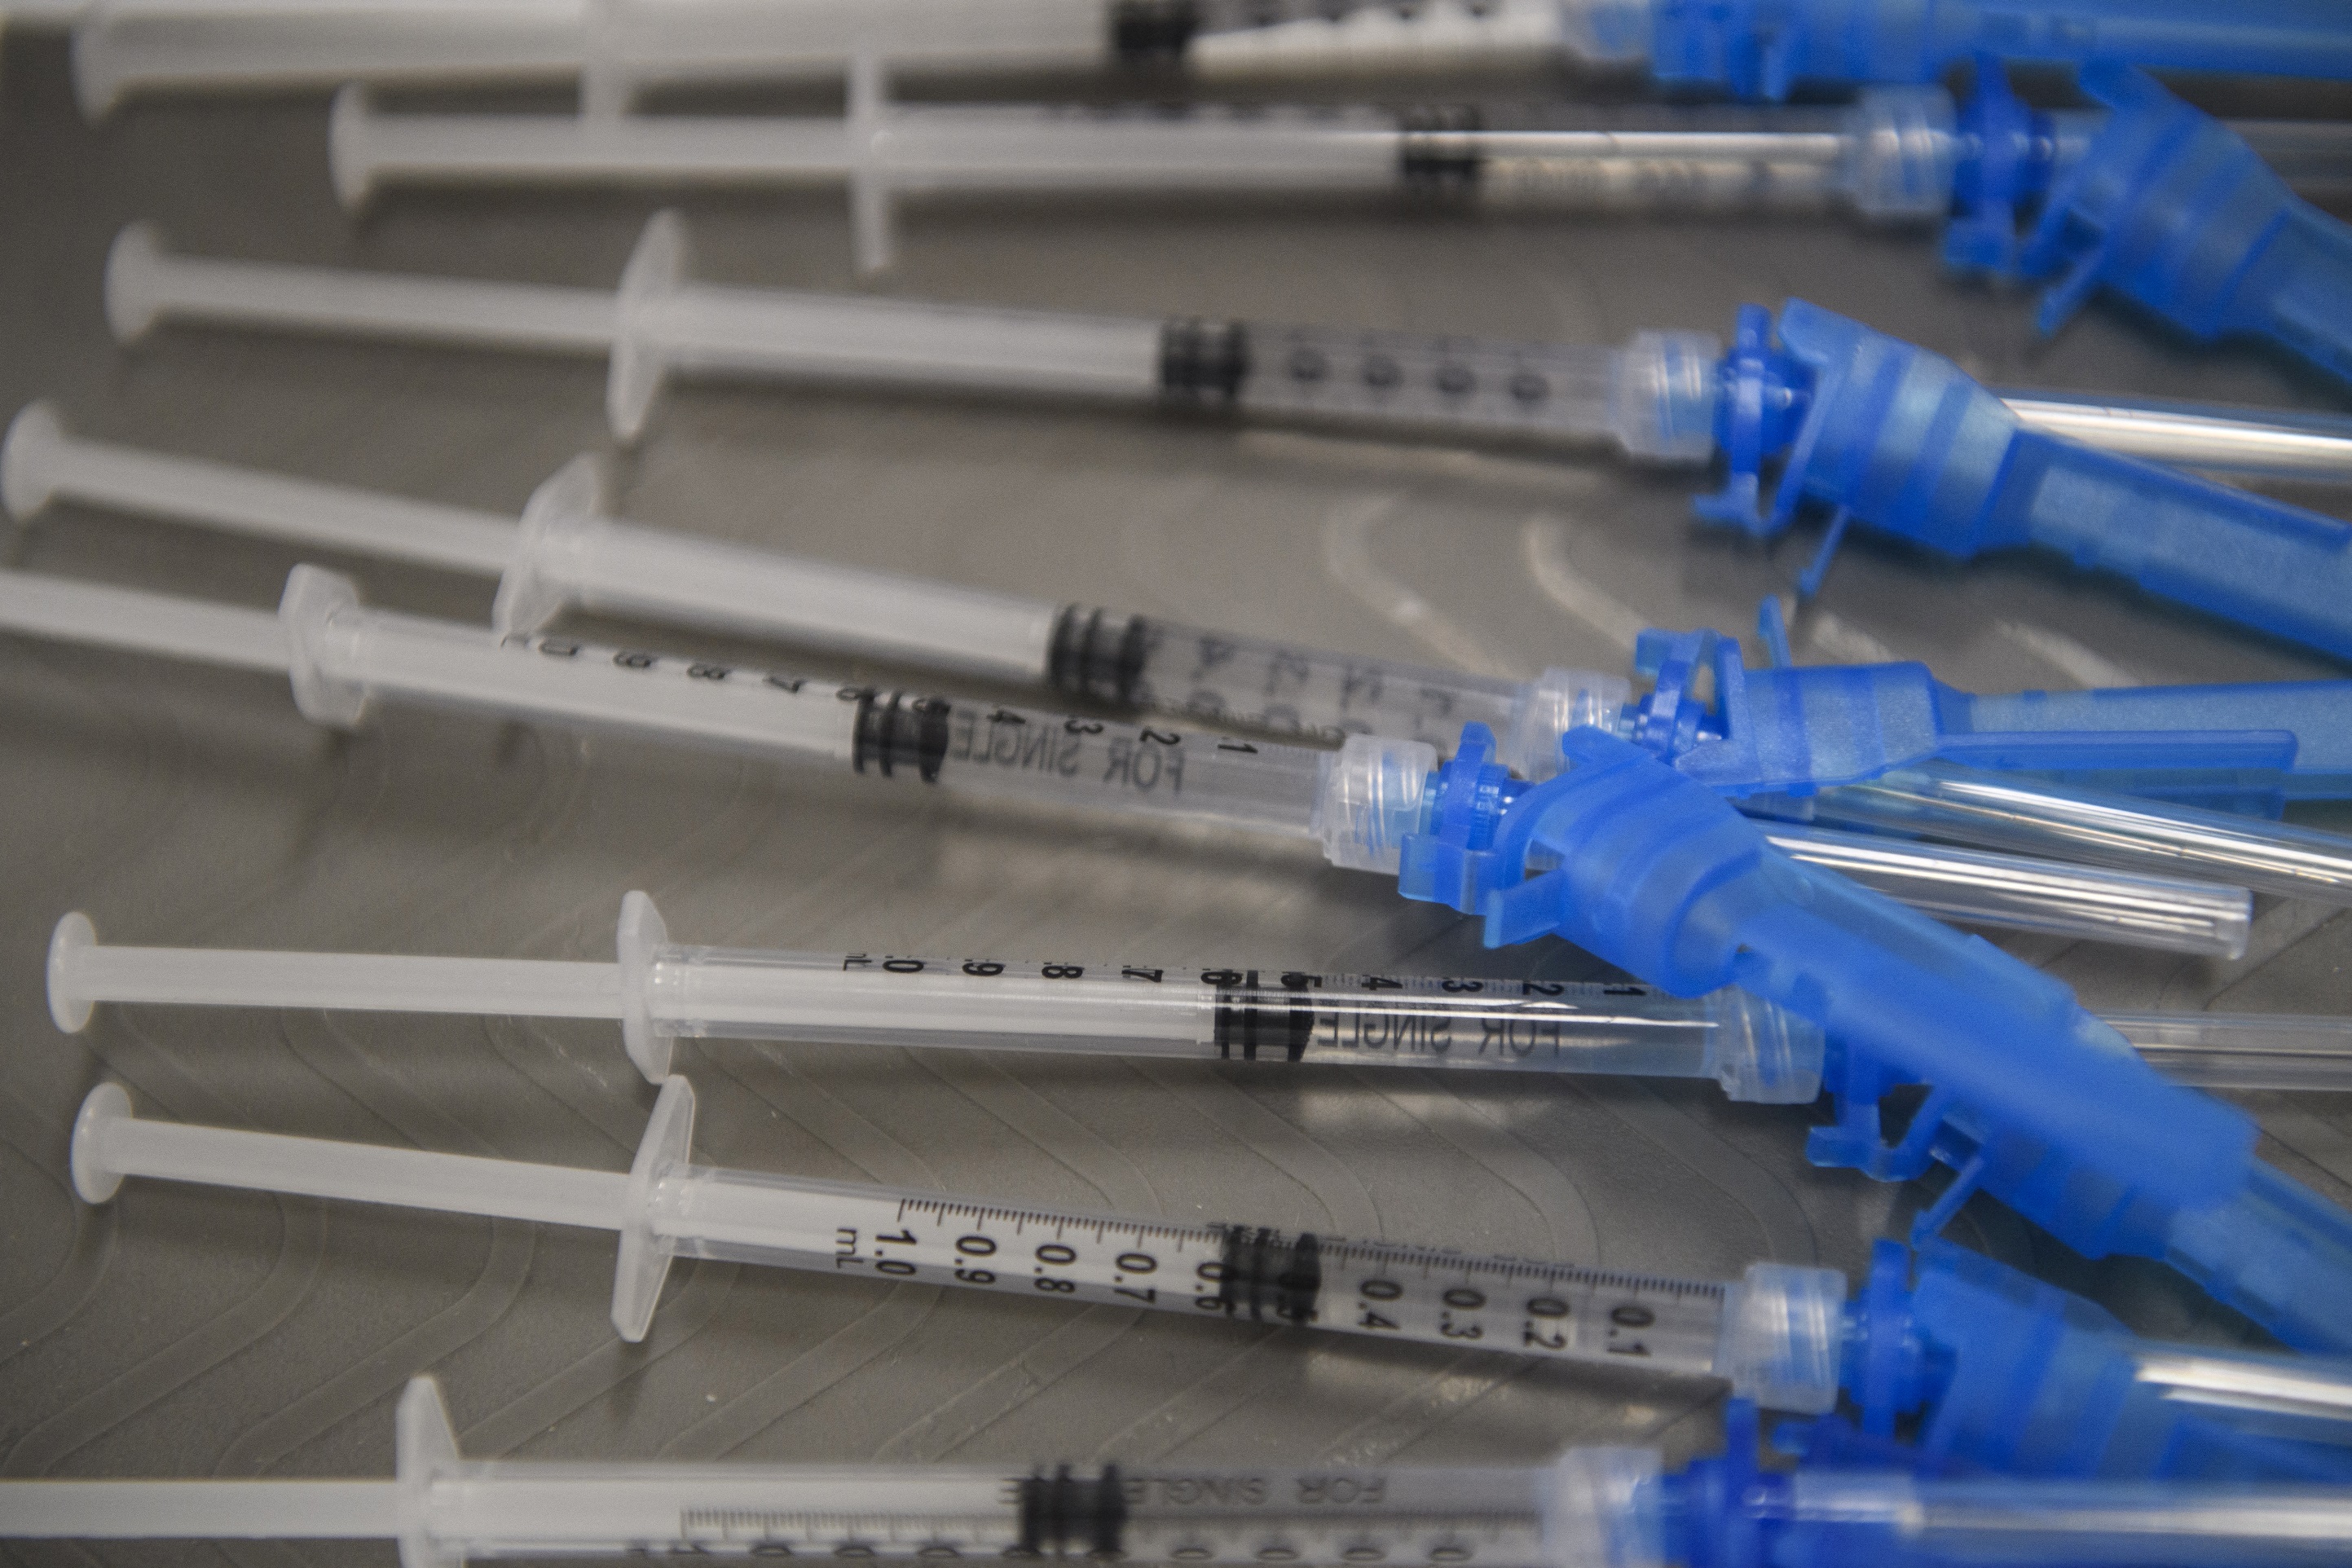 Le vaccin Johnson &amp; Johnson (Ad26.COV2.S) a démontré une efficacité de 85 % contre les hospitalisations liées à la&nbsp;Covid-19. © Patrick T. Fallon, AFP